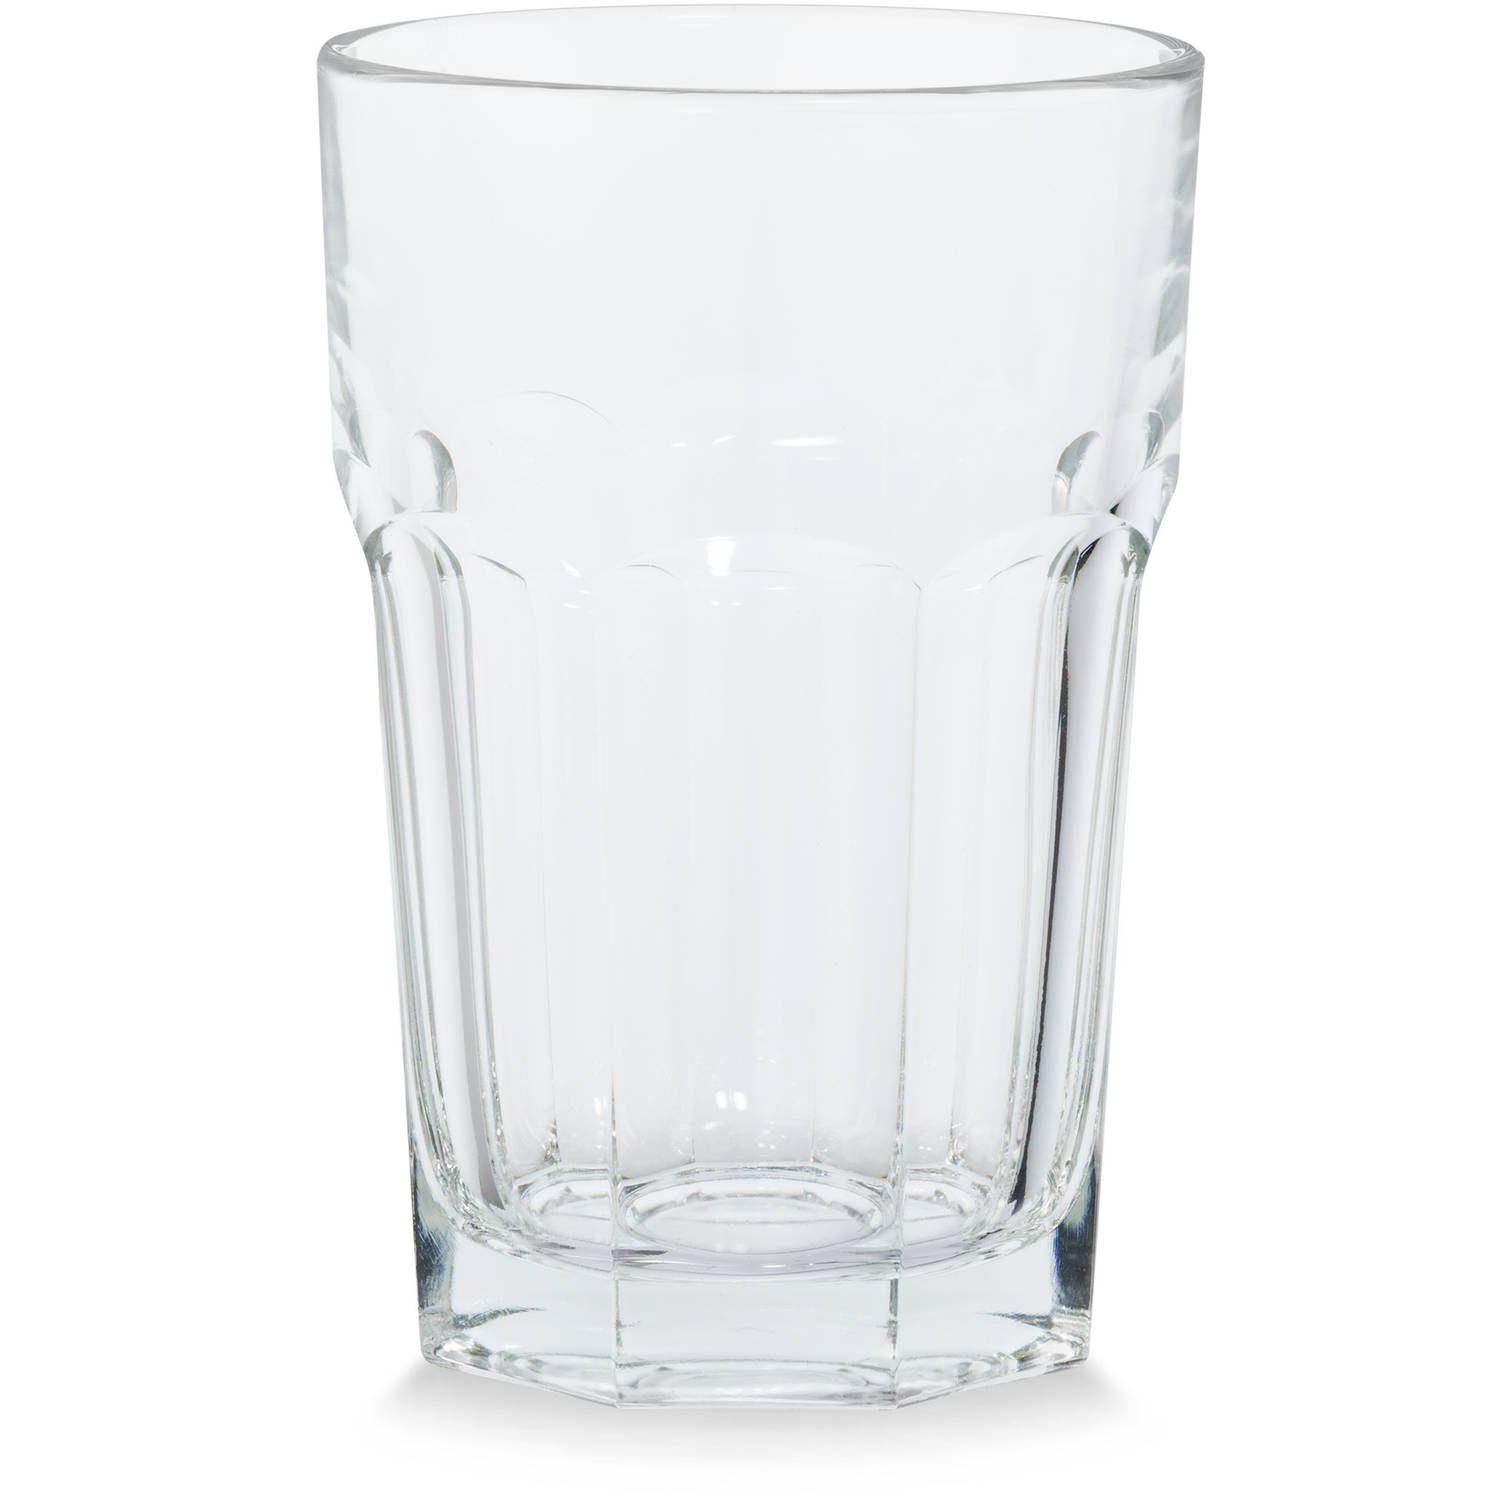 Conflict Grootste Verplaatsbaar Blokker drinkglas IJssel 36 cl helder | Blokker